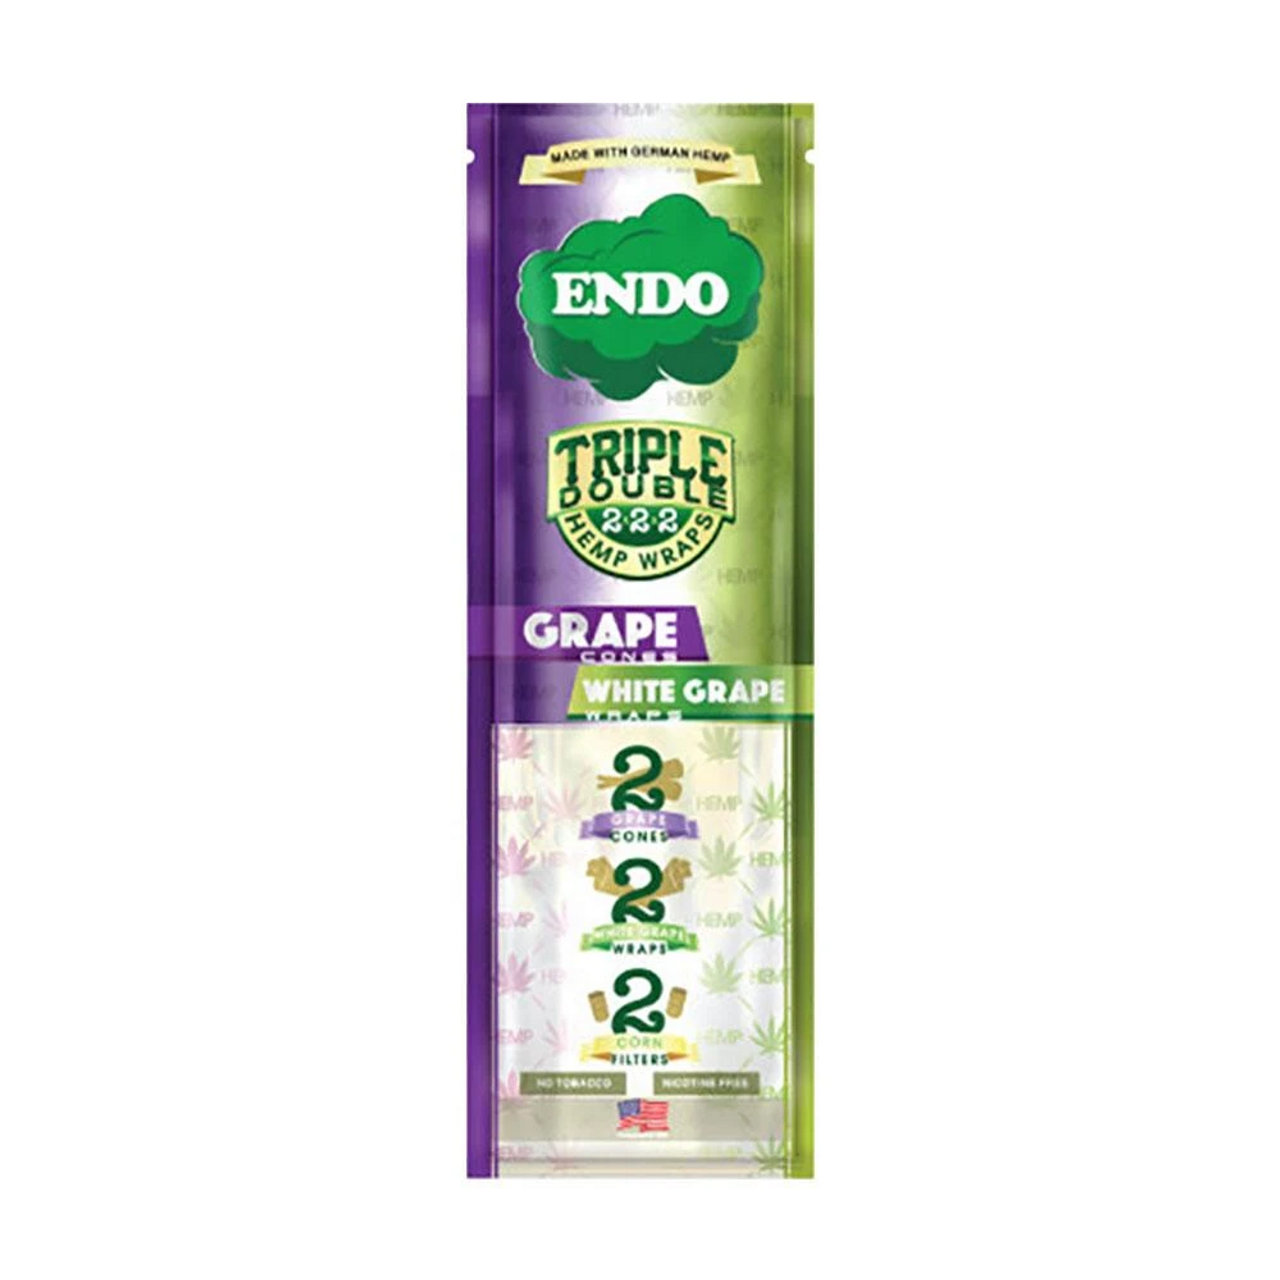 Endo Hemp Wraps Flavored Triple Doubles